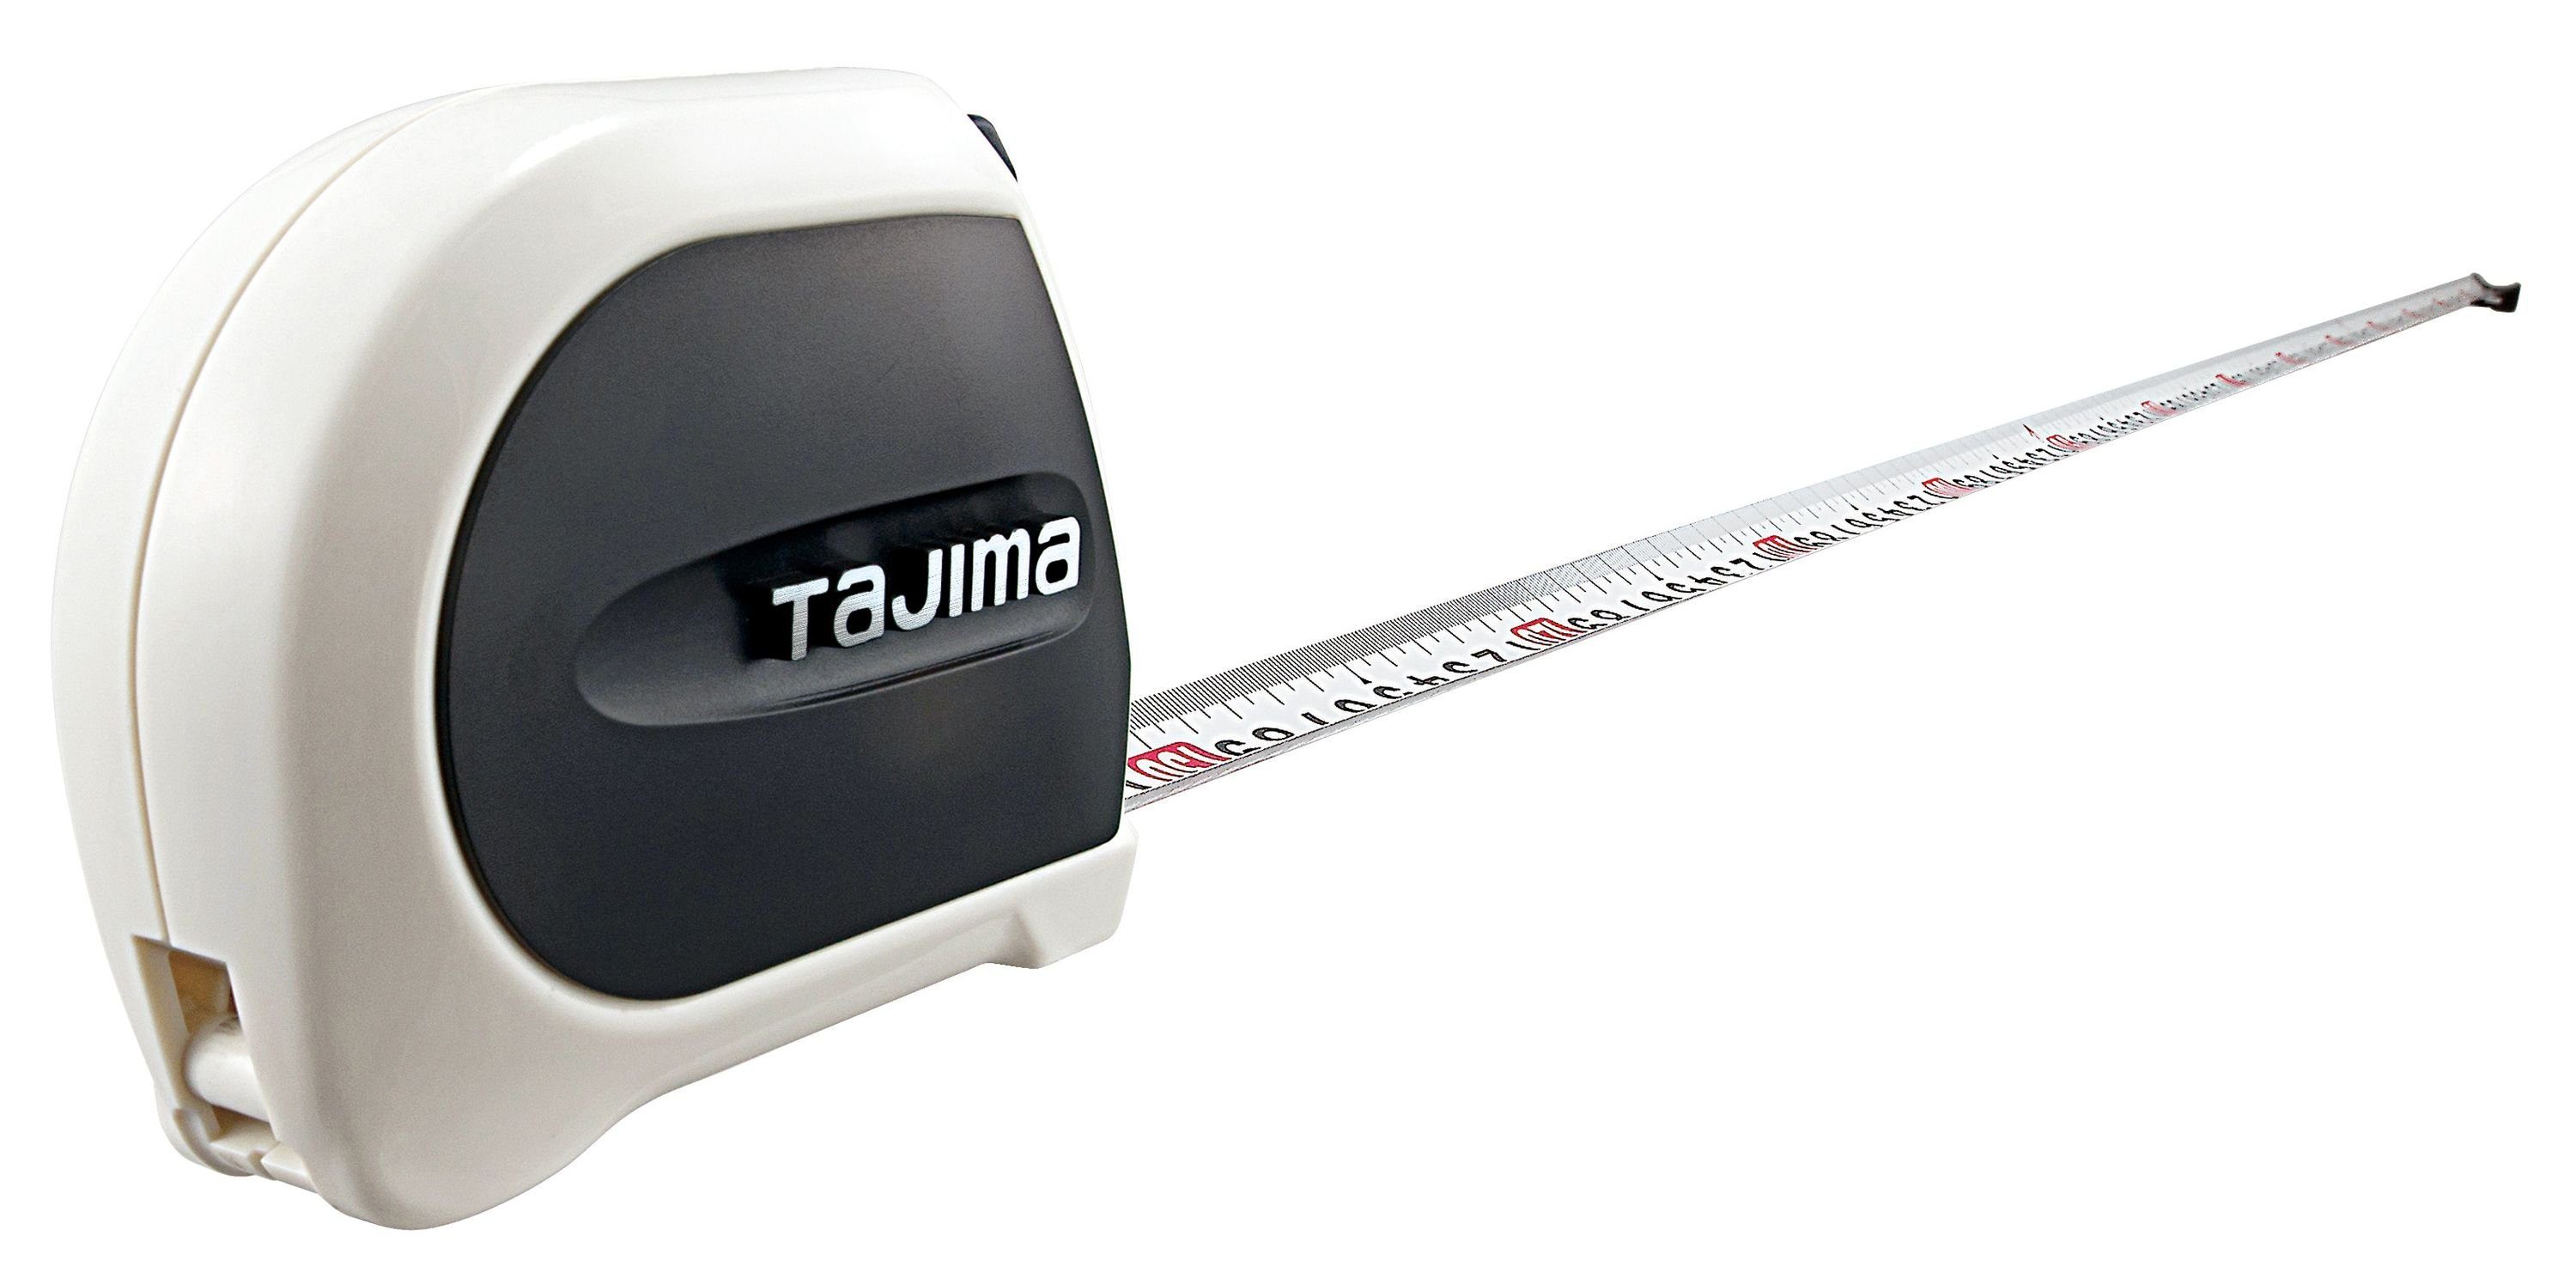 Tajima Maßband TAJIMA SIGMA STOP 3m/16mm TAJ-21967 Bandmass weiss